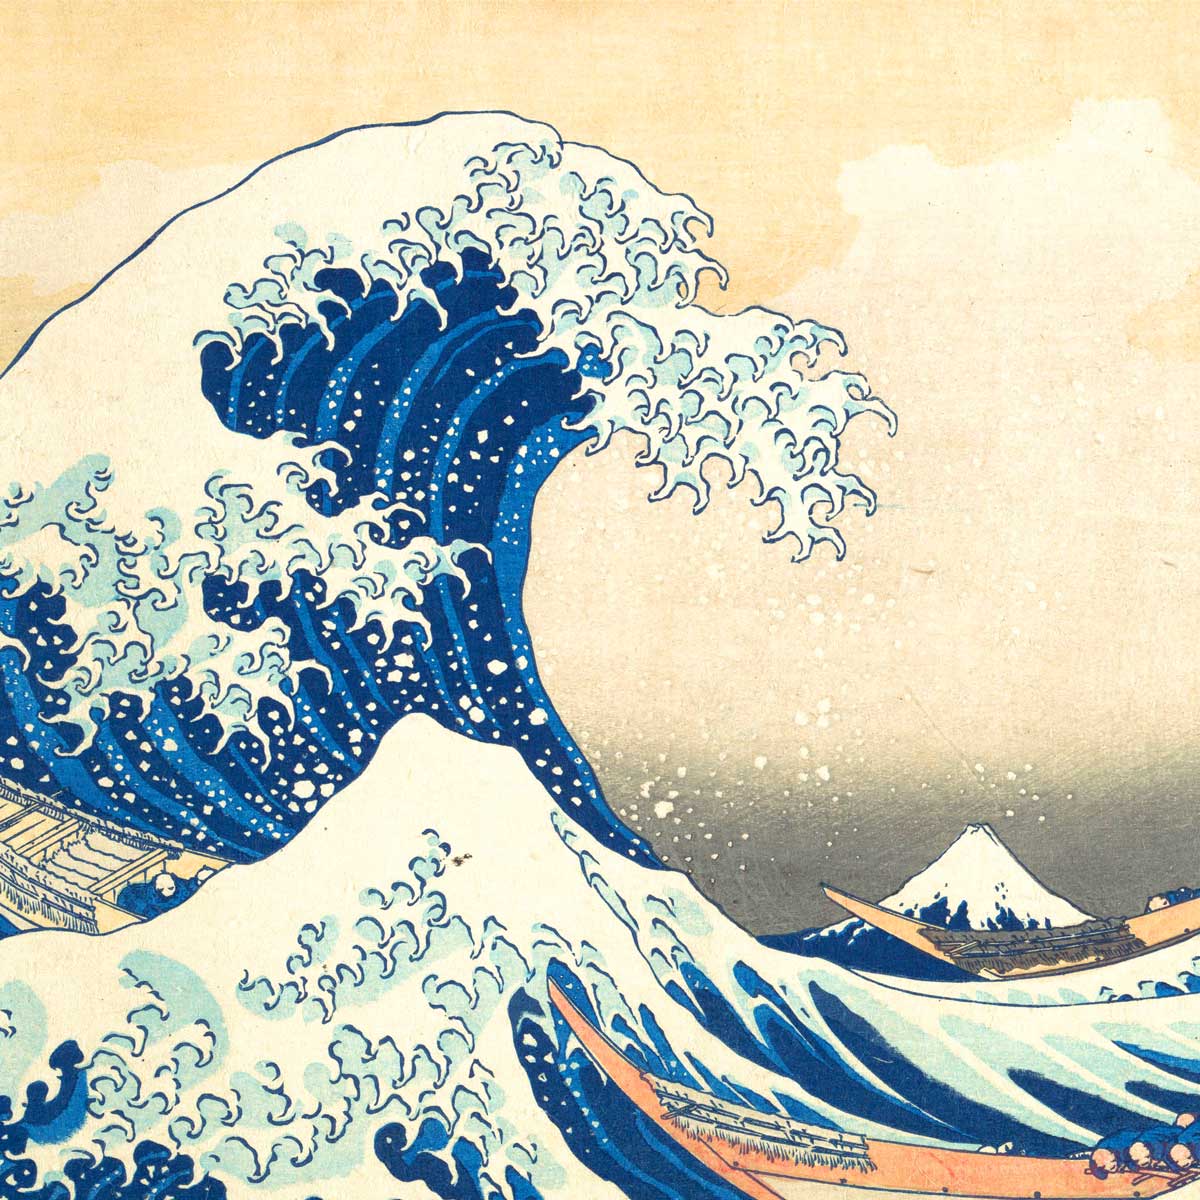 La gran ola de Kanagawa es la obra de arte más reproducida de la historia.